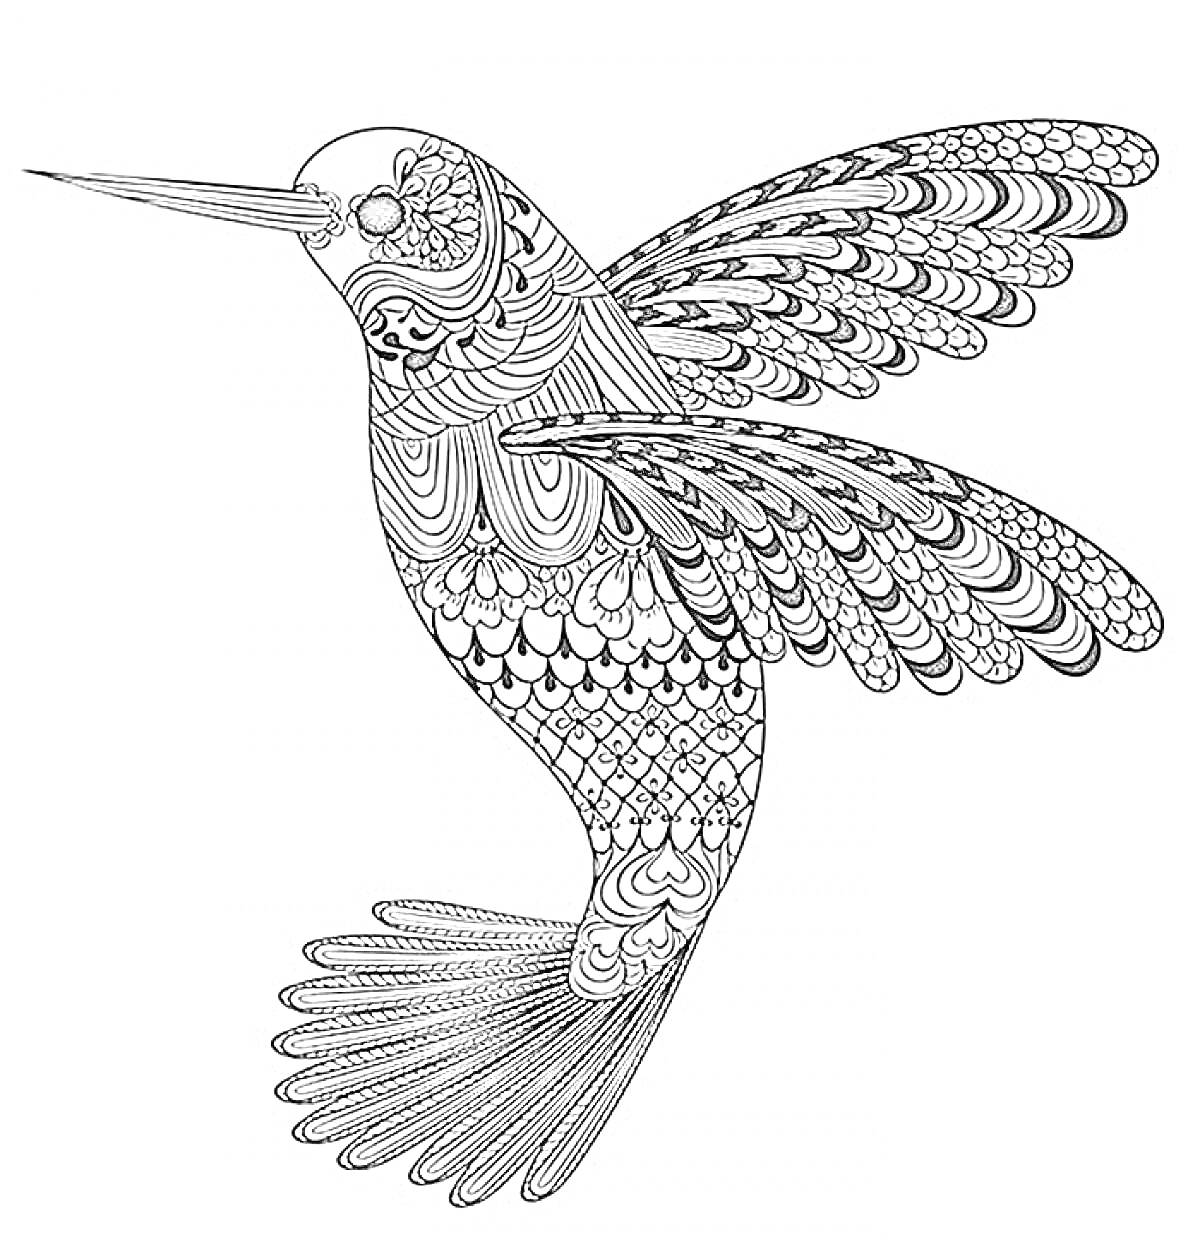 Раскраска Колибри с узорами на крыльях, теле и хвосте